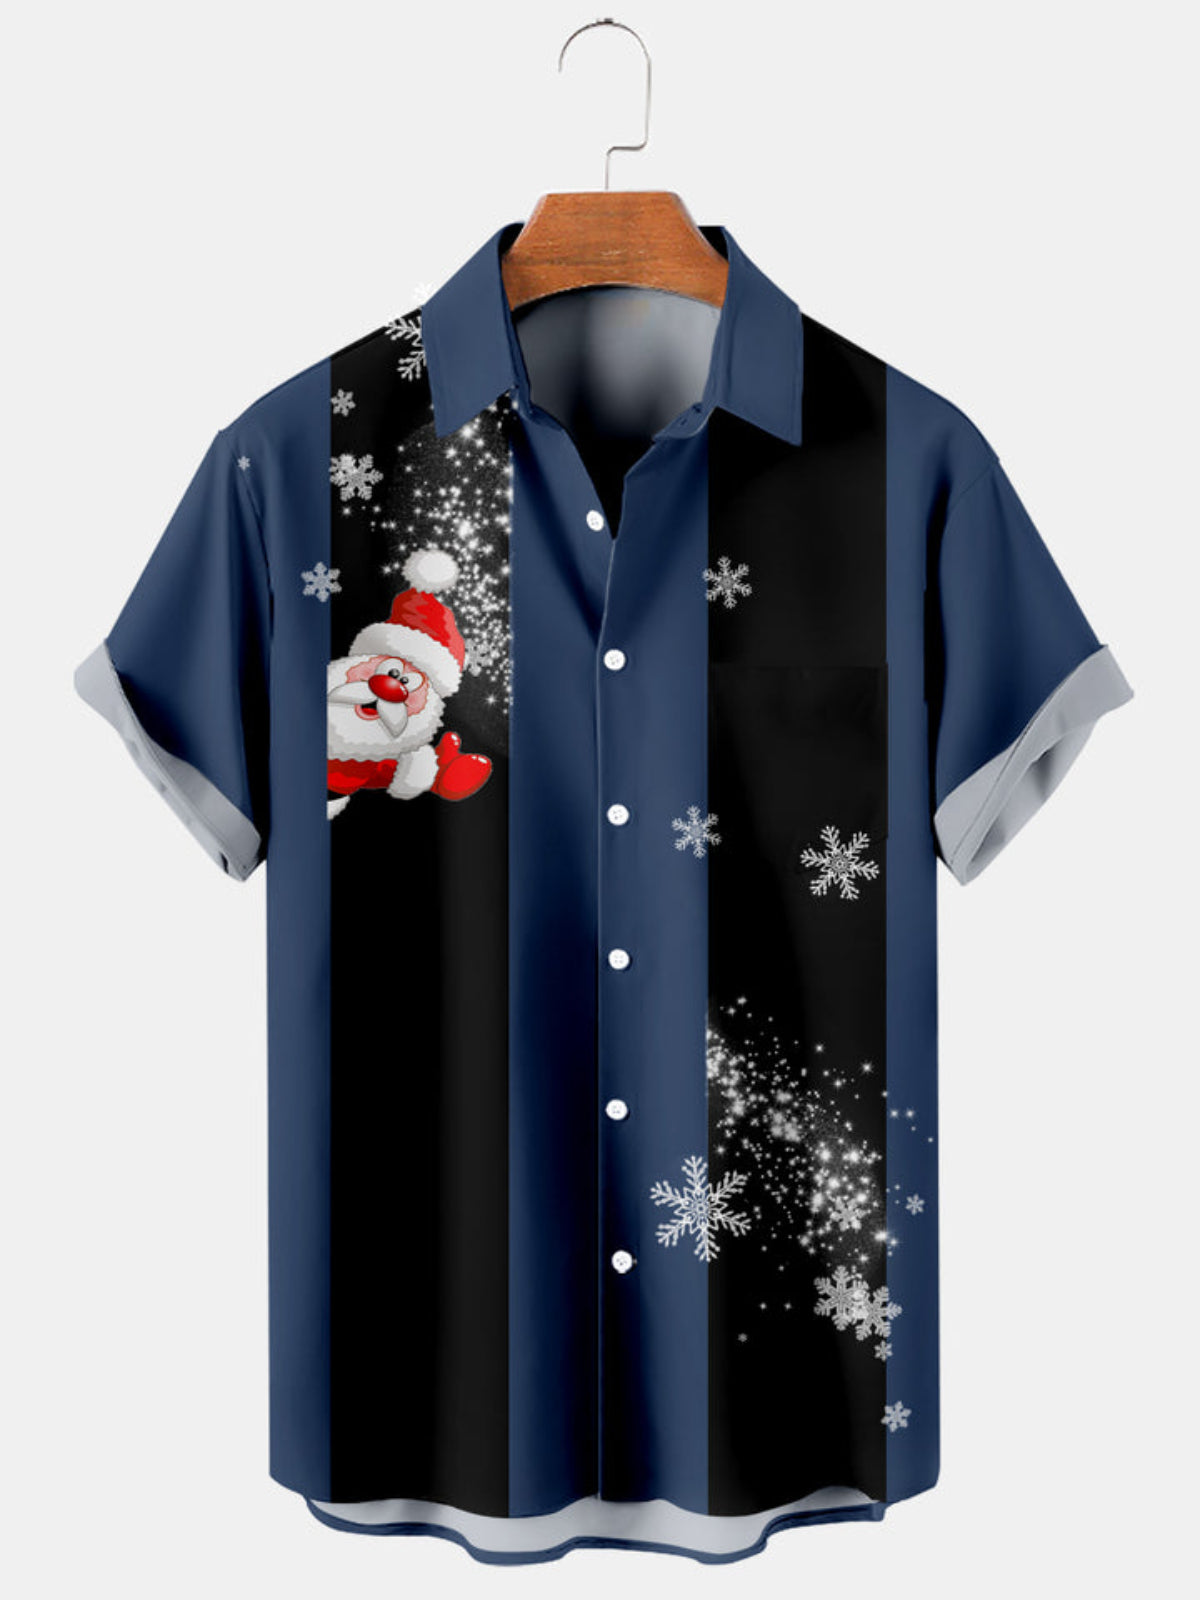 Snowflake Holiday Bowling Shirt